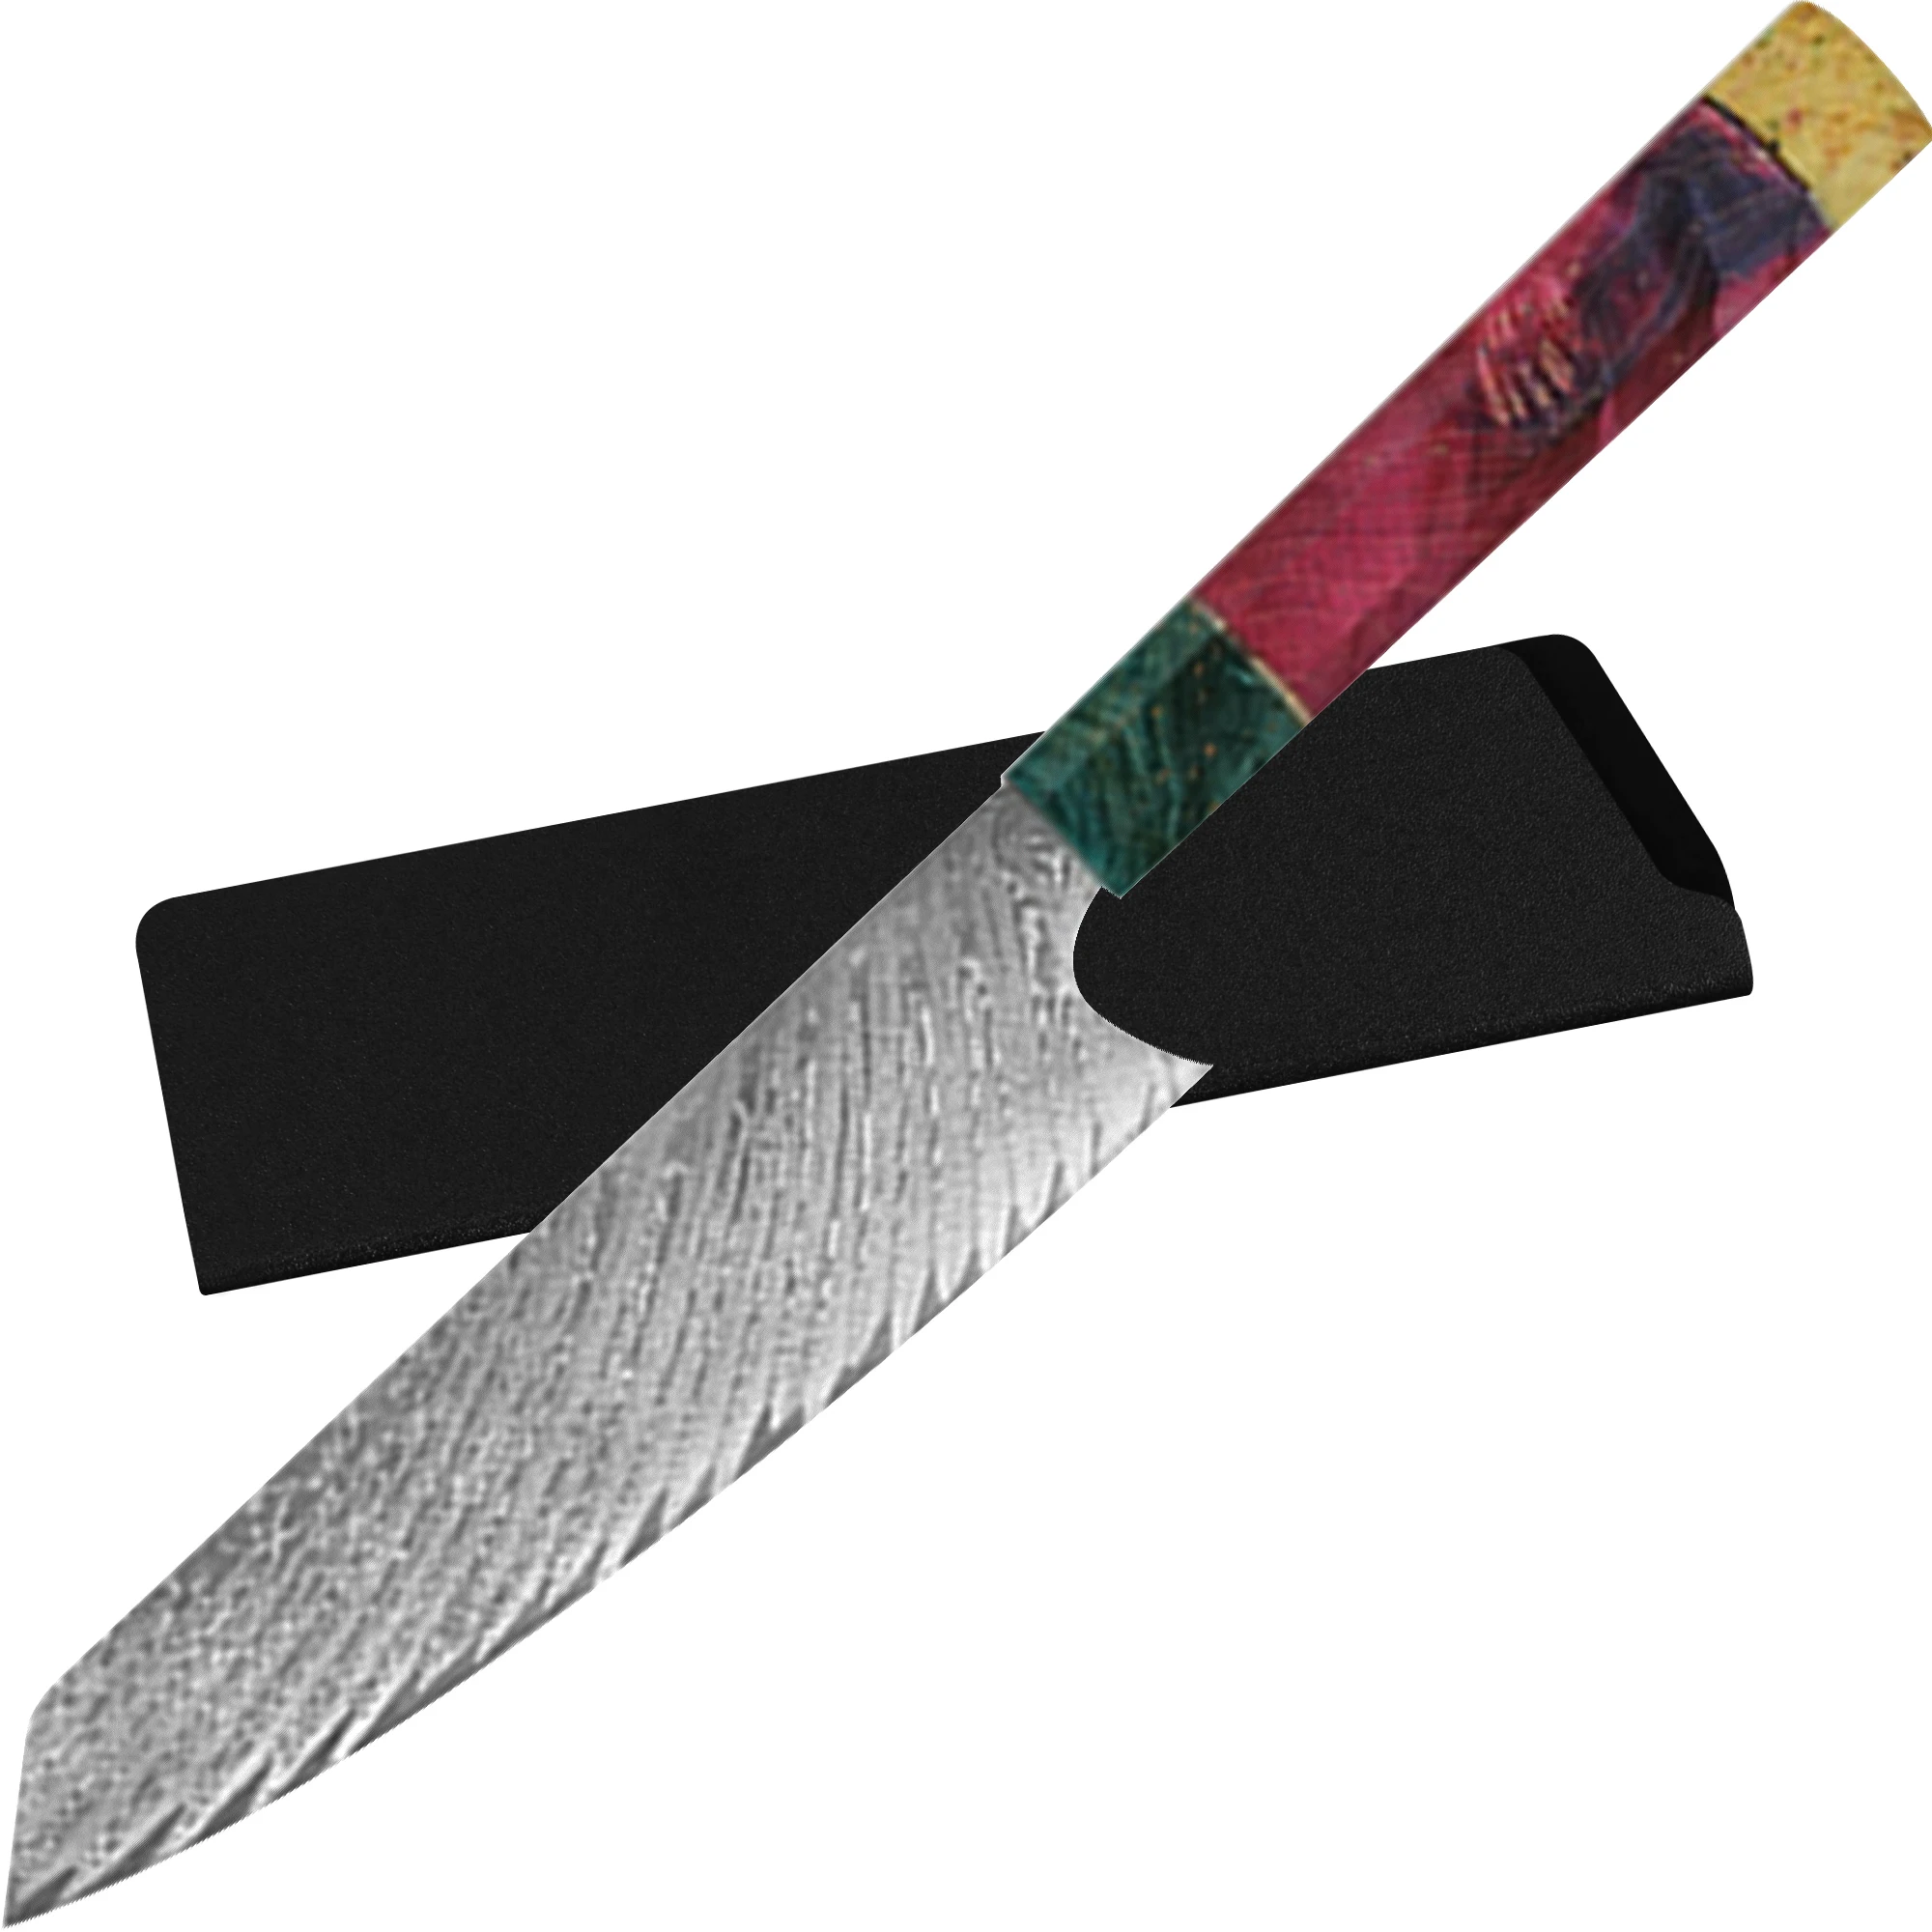 Xyj 8-дюймовый Высококачественный Нож из дамасской стали для нарезки ультраострый